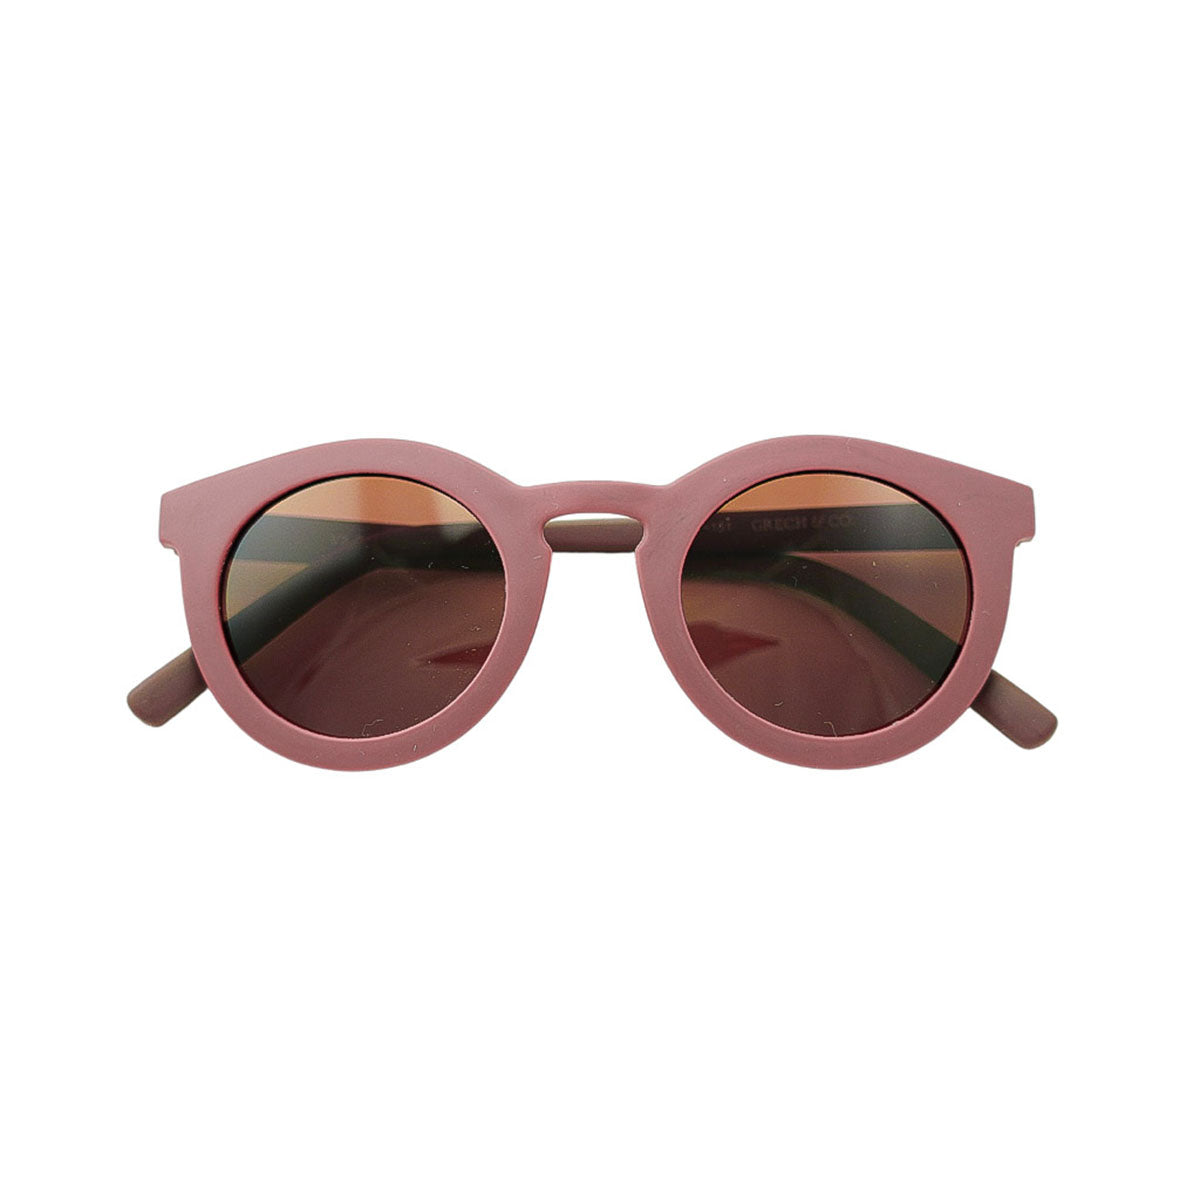 De Grech & co. zonnebril classic buigbaar kids in de kleur mallow is speciaal ontworpen voor kindjes die willen matchen met hun mama. De zonnebril is namelijk ook beschikbaar voor moeders en baby’s! VanZus